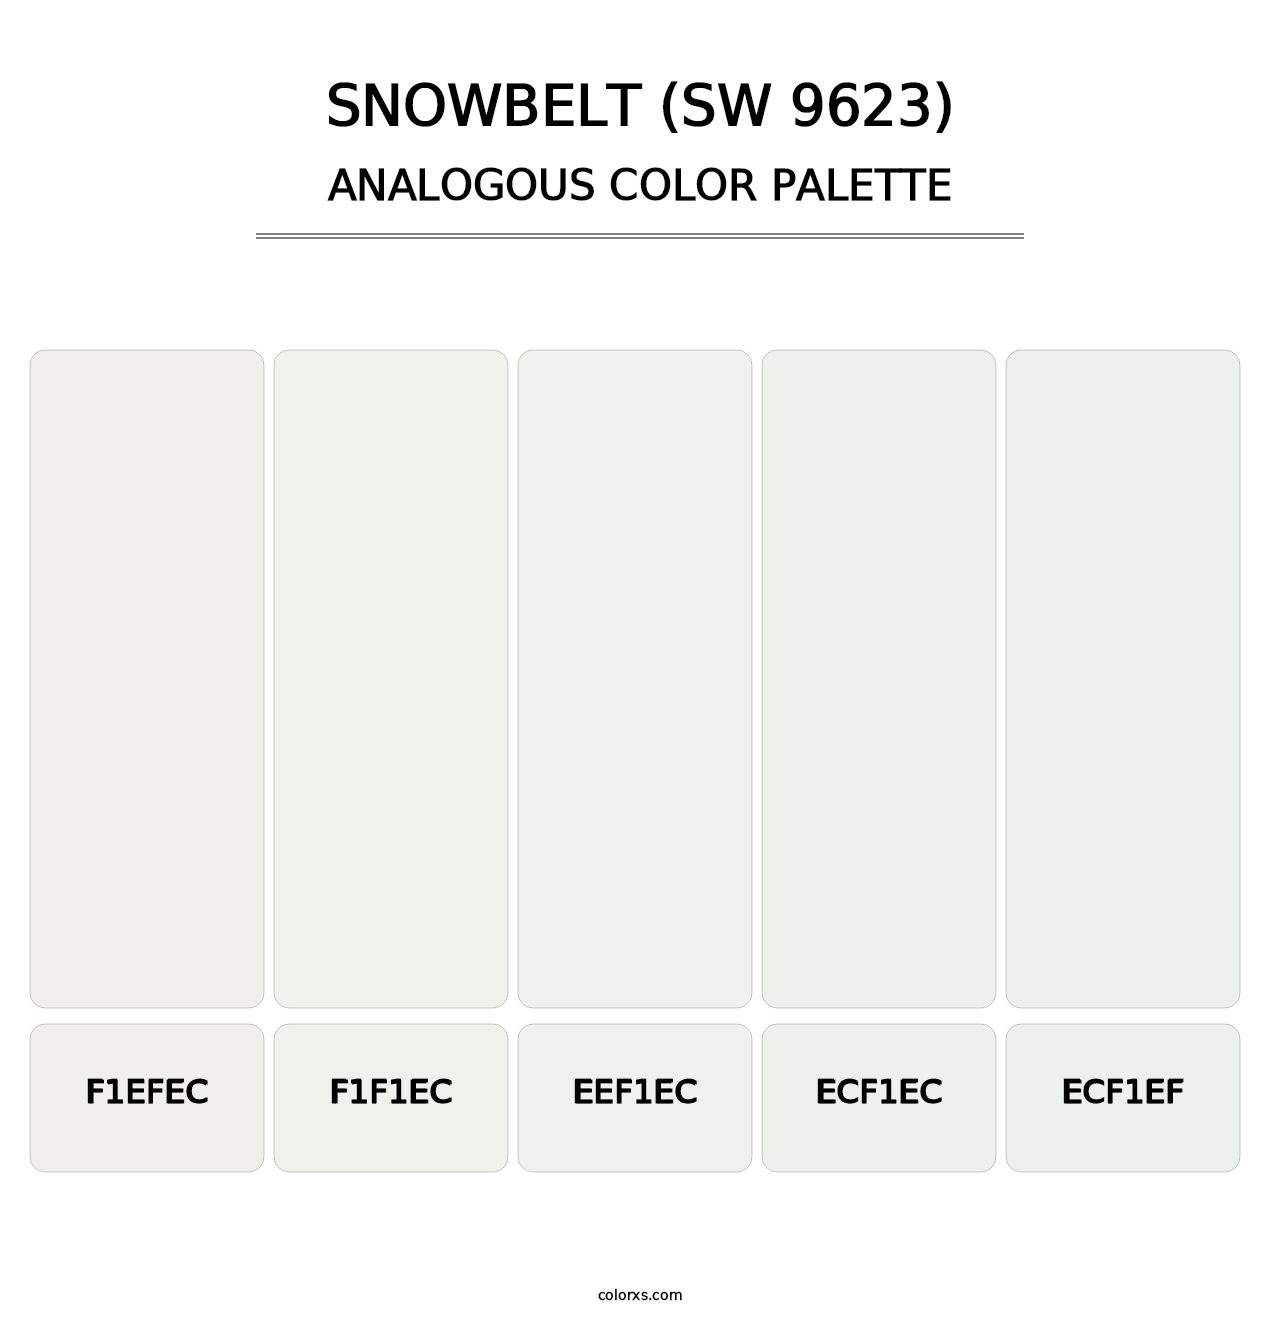 Snowbelt (SW 9623) - Analogous Color Palette